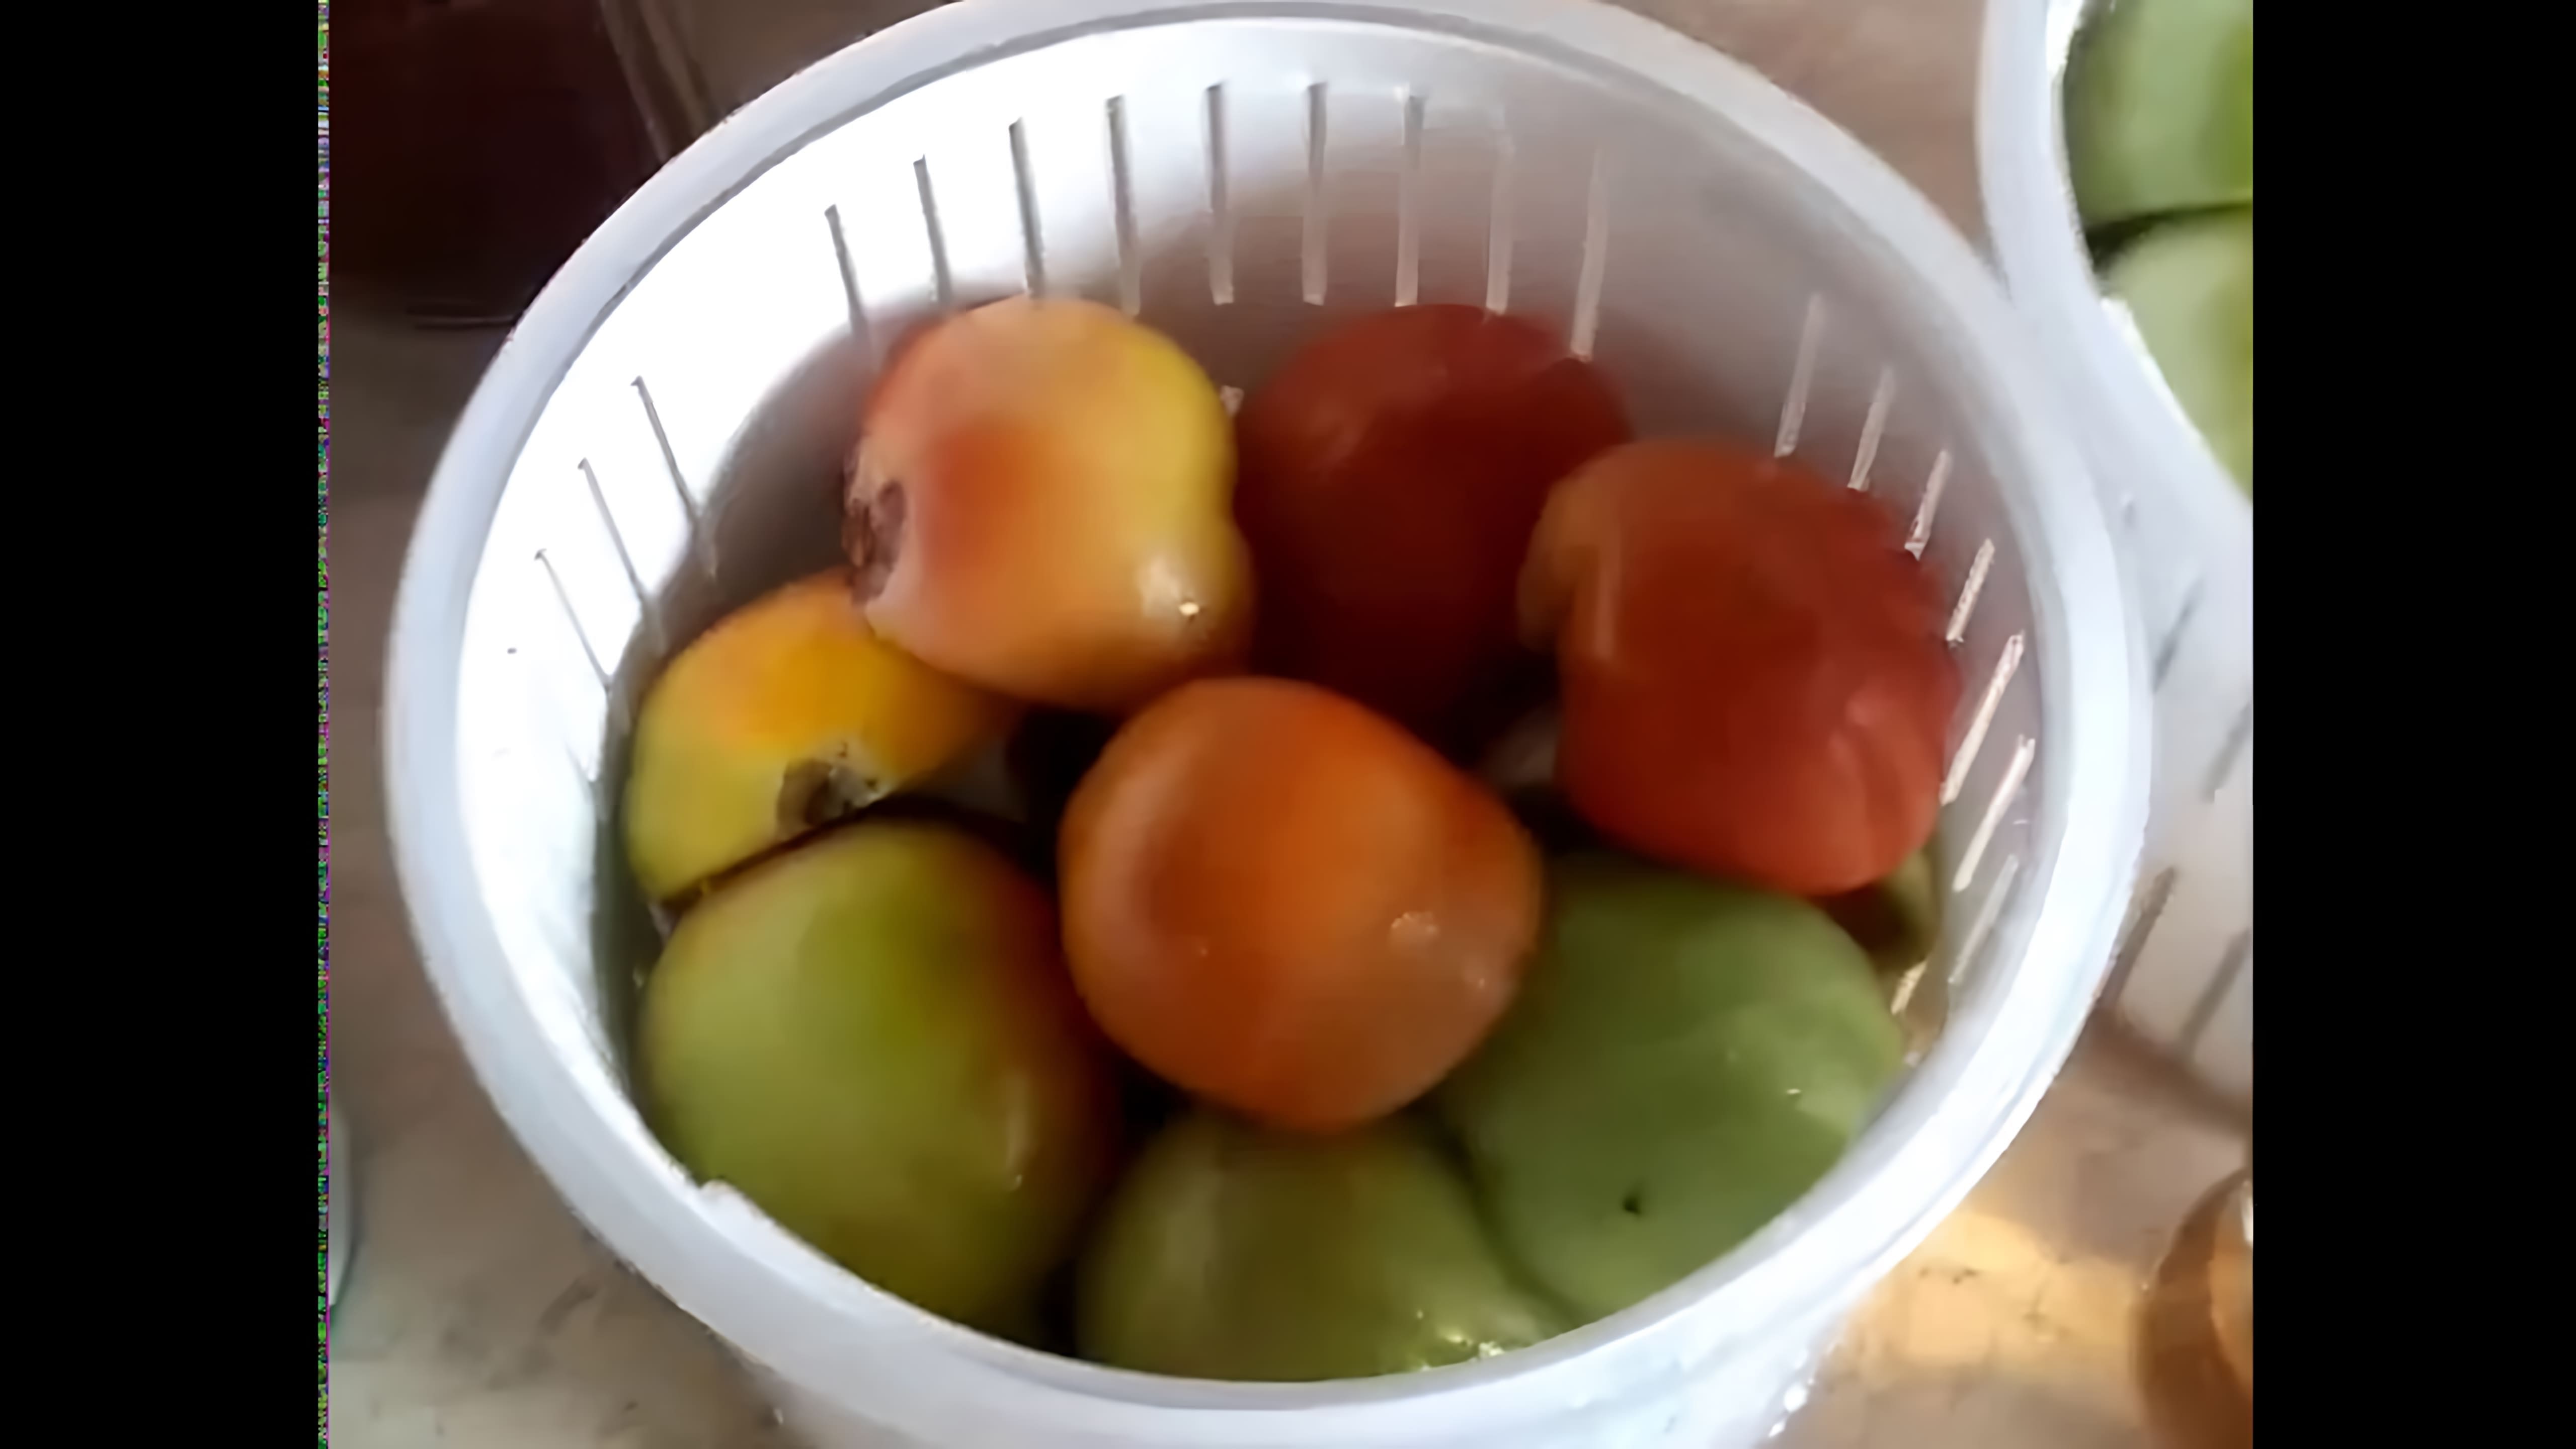 В этом видео демонстрируется процесс приготовления тушу из зеленых помидор по турецкому рецепту